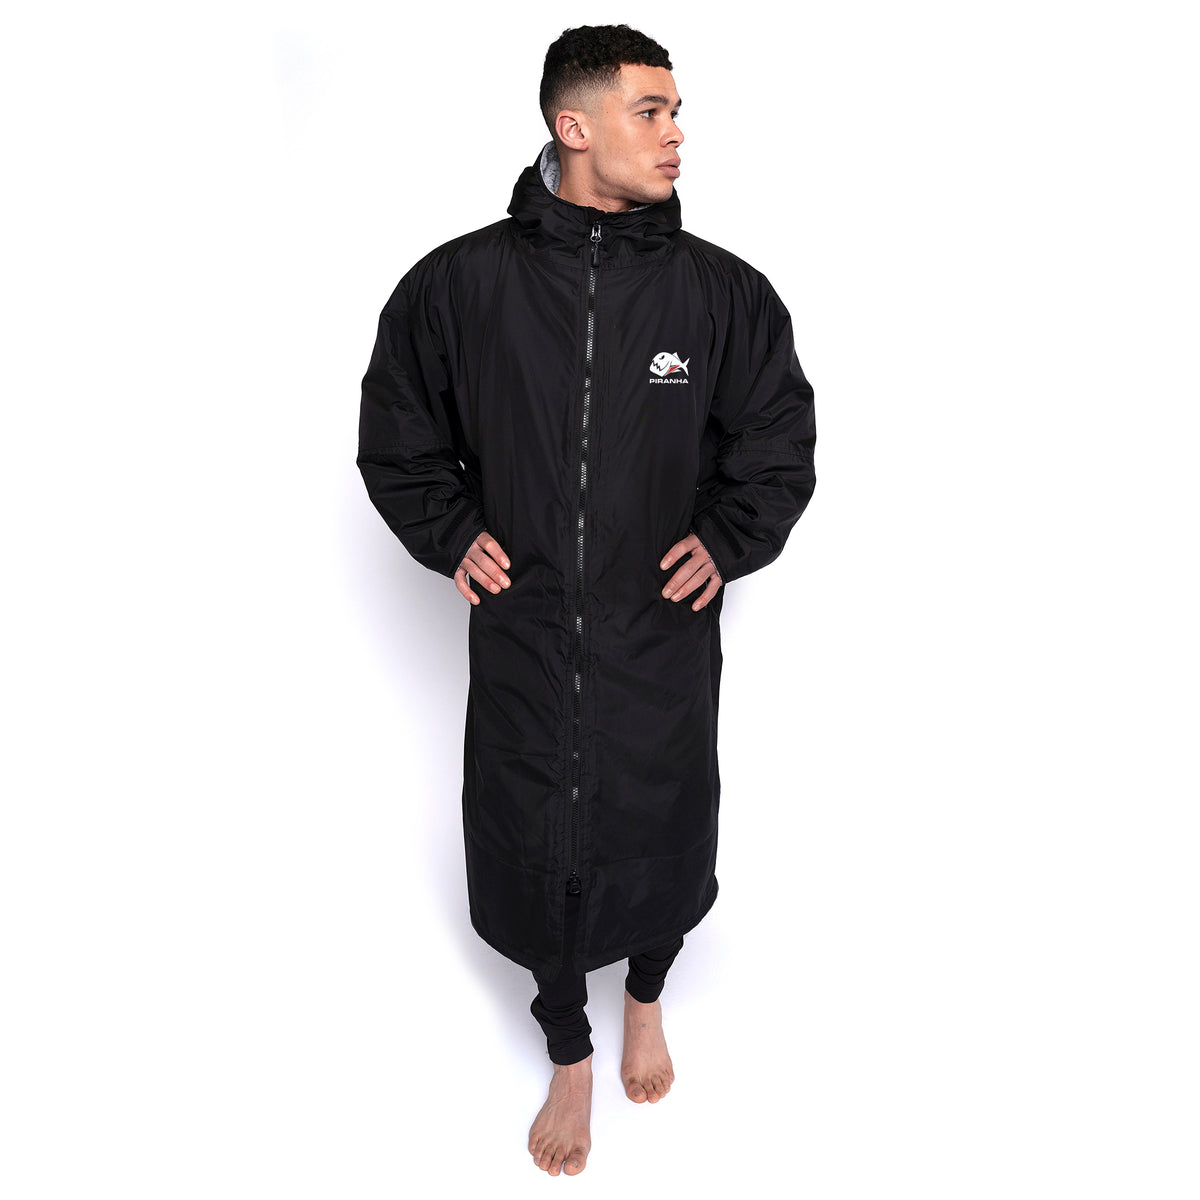 Piranha Senior Waterproof Changing Robe: Black